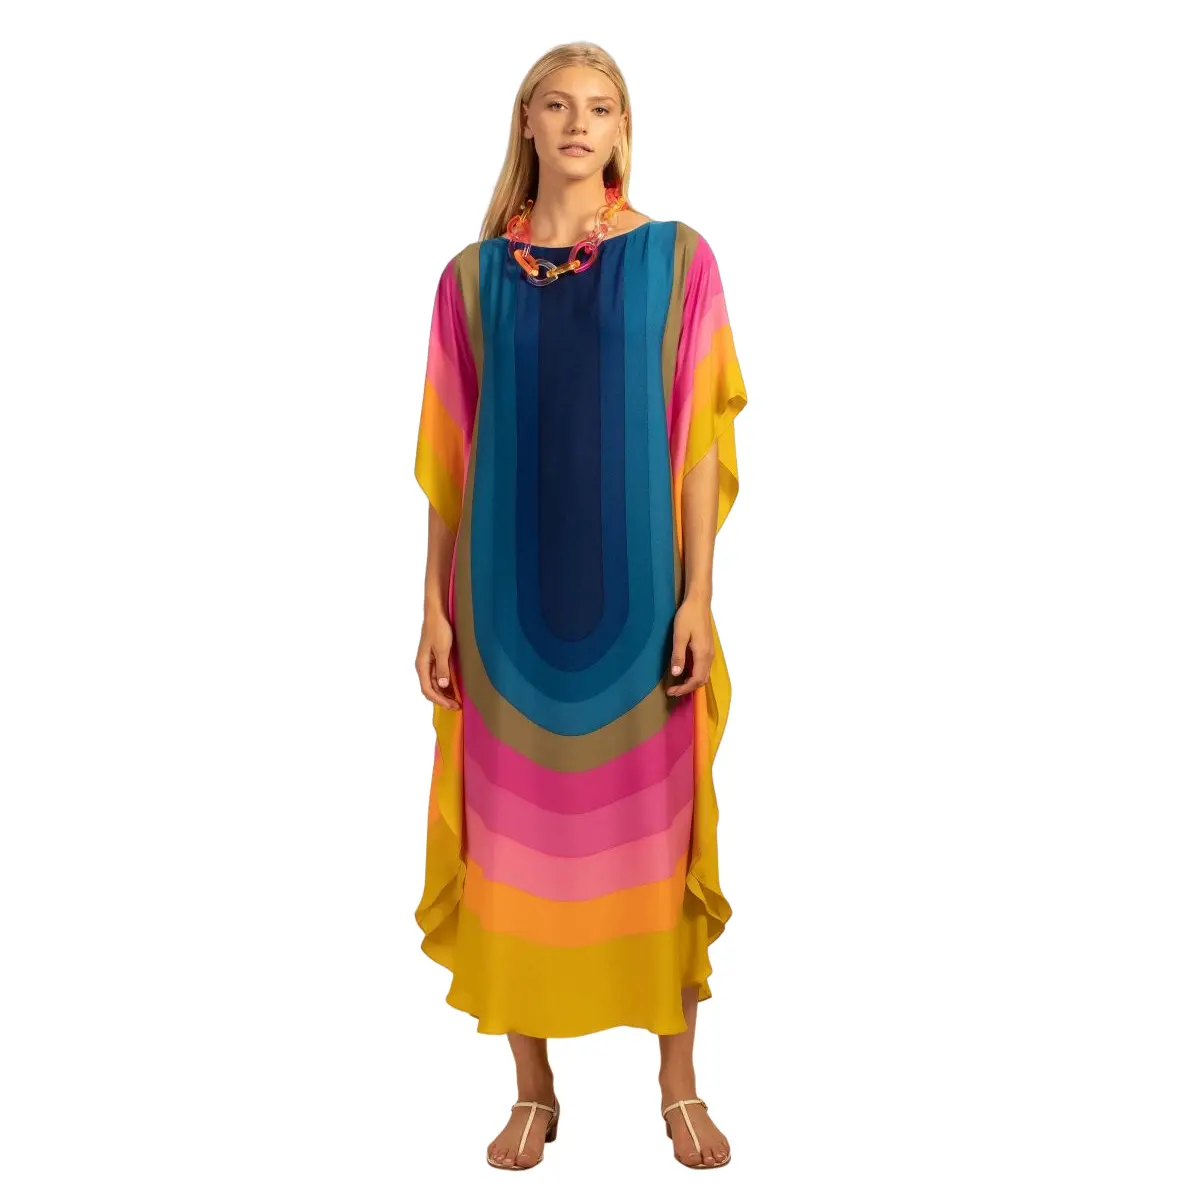 Gaun pantai musim panas untuk anak perempuan, Gaun Atasan Kaftan desain kasual motif banyak warna gaya pelangi, gaun pantai musim panas cantik untuk anak perempuan